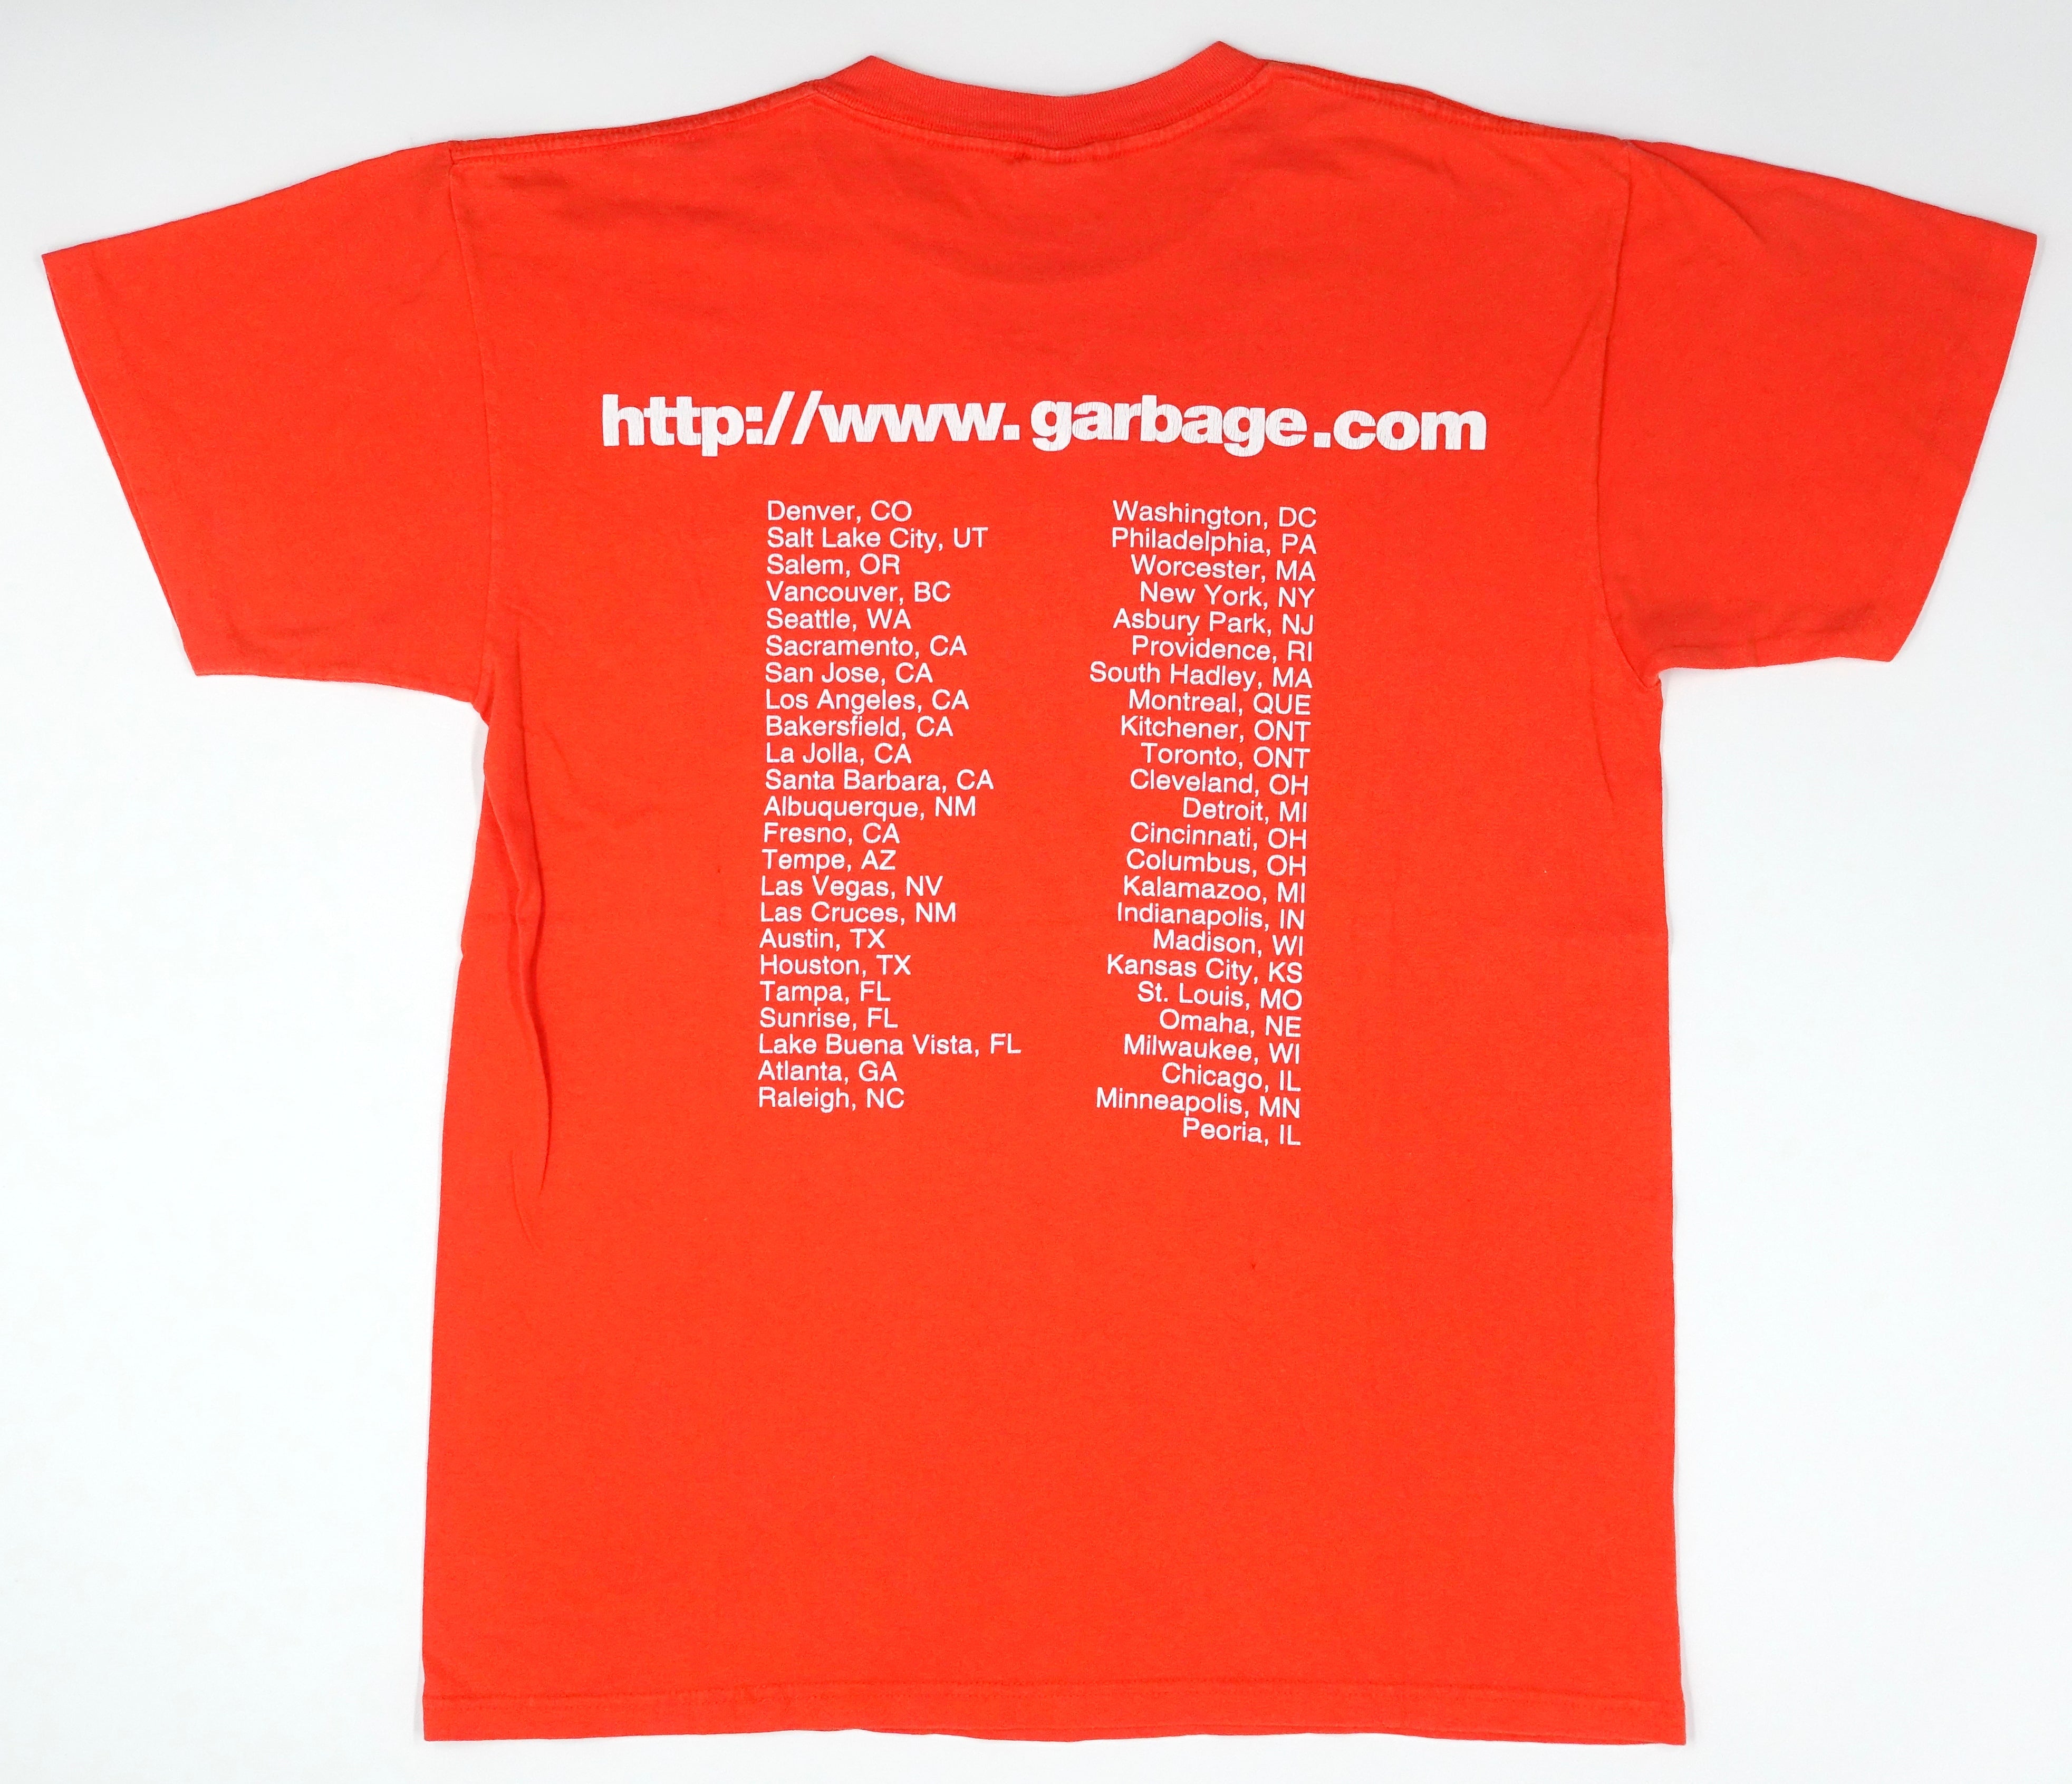 Garbage - Version 2.0 1998 North American Tour Shirt Size Large